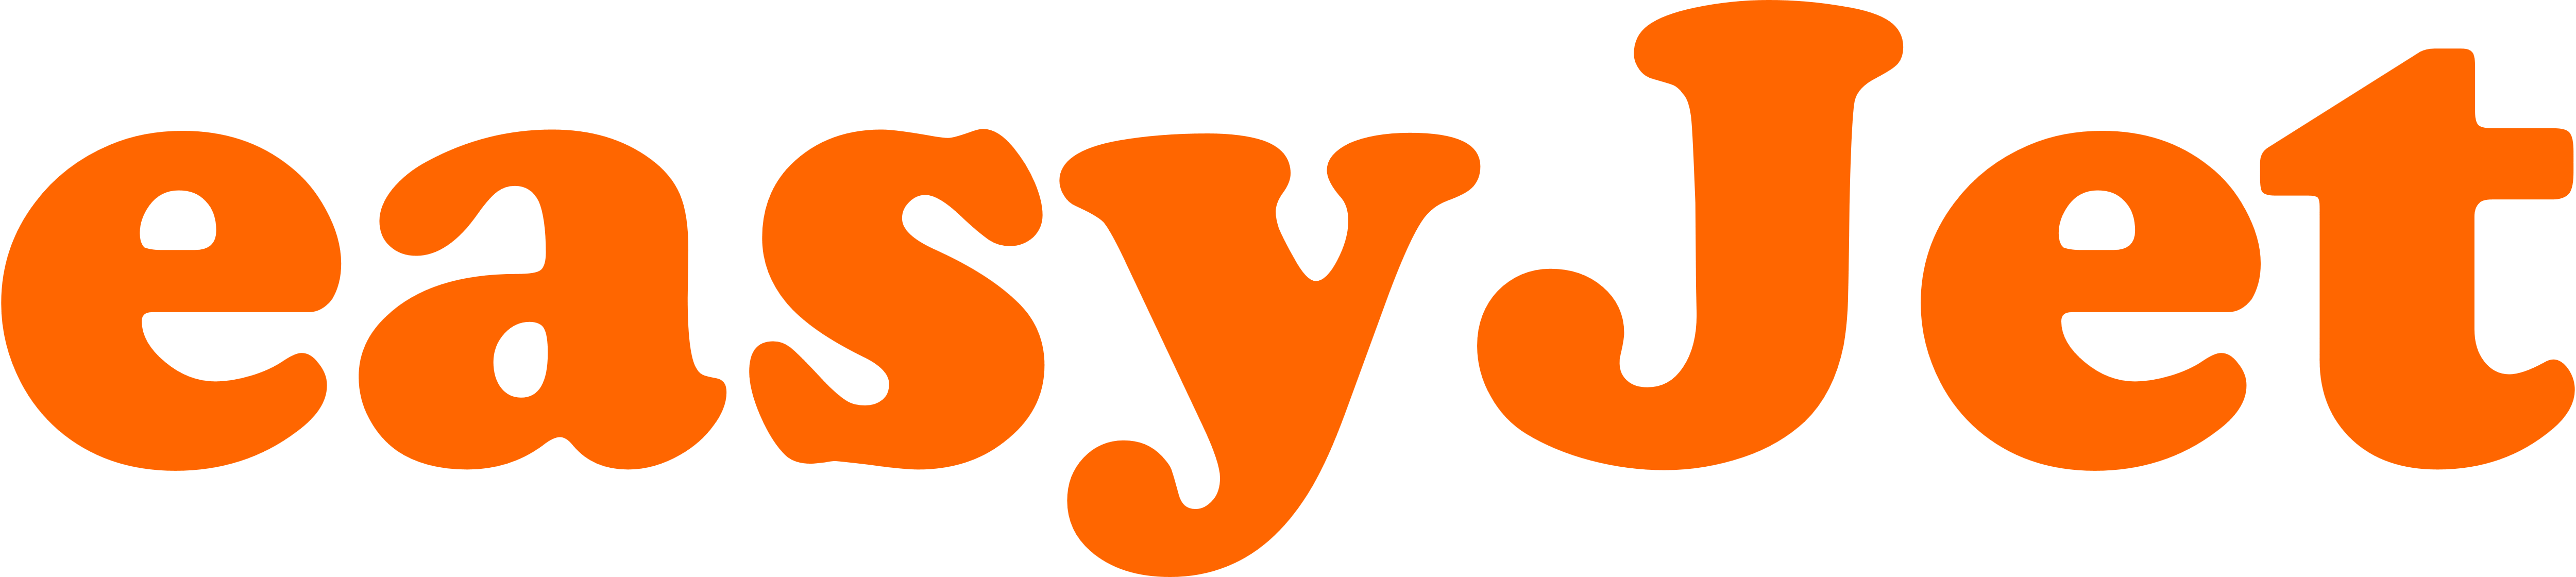 EasyJet – Logos Download